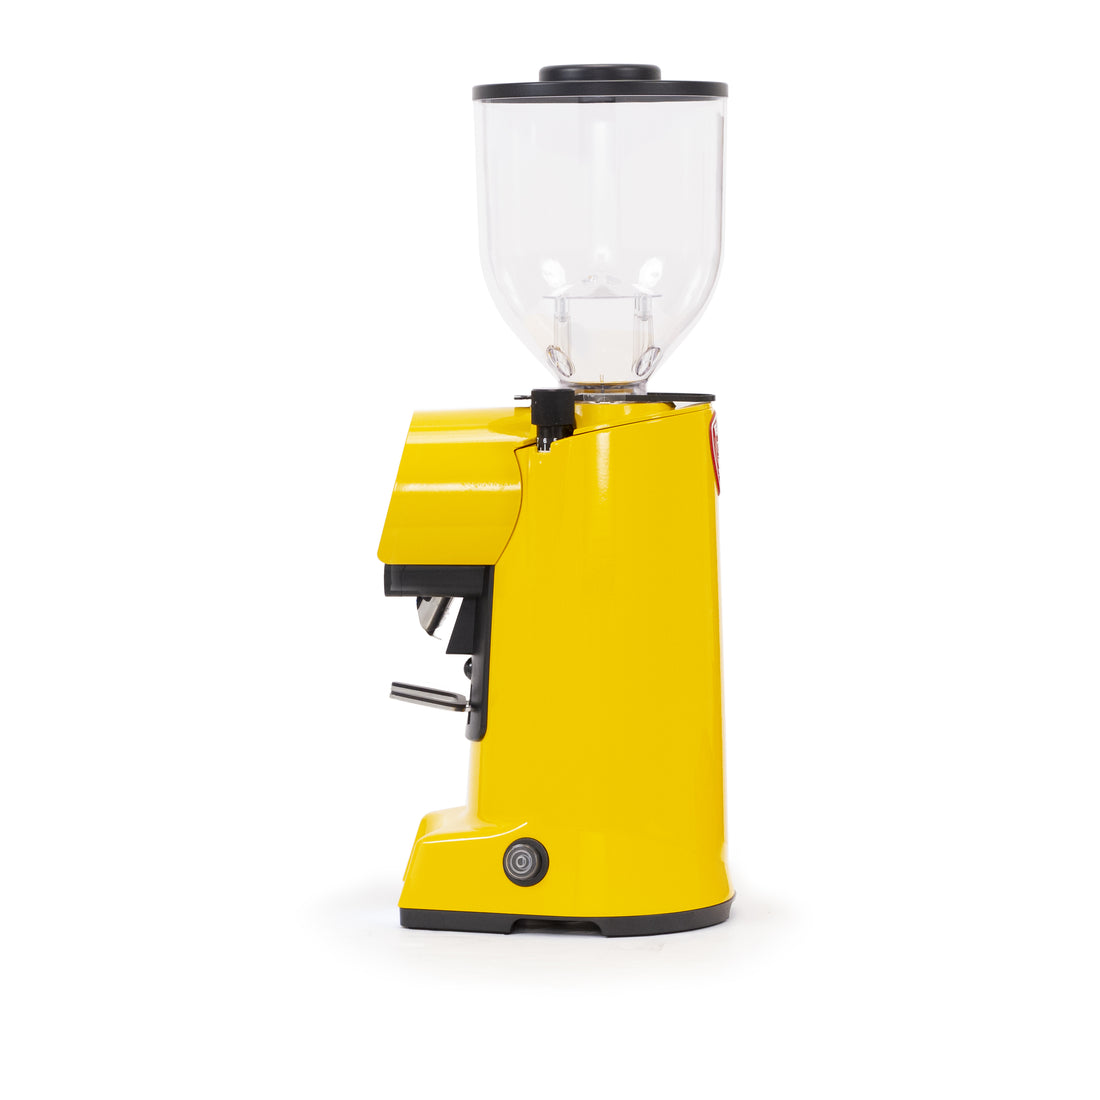 Eureka Mignon Specialita Yellow - Automatic Grinder - Coffeedesk